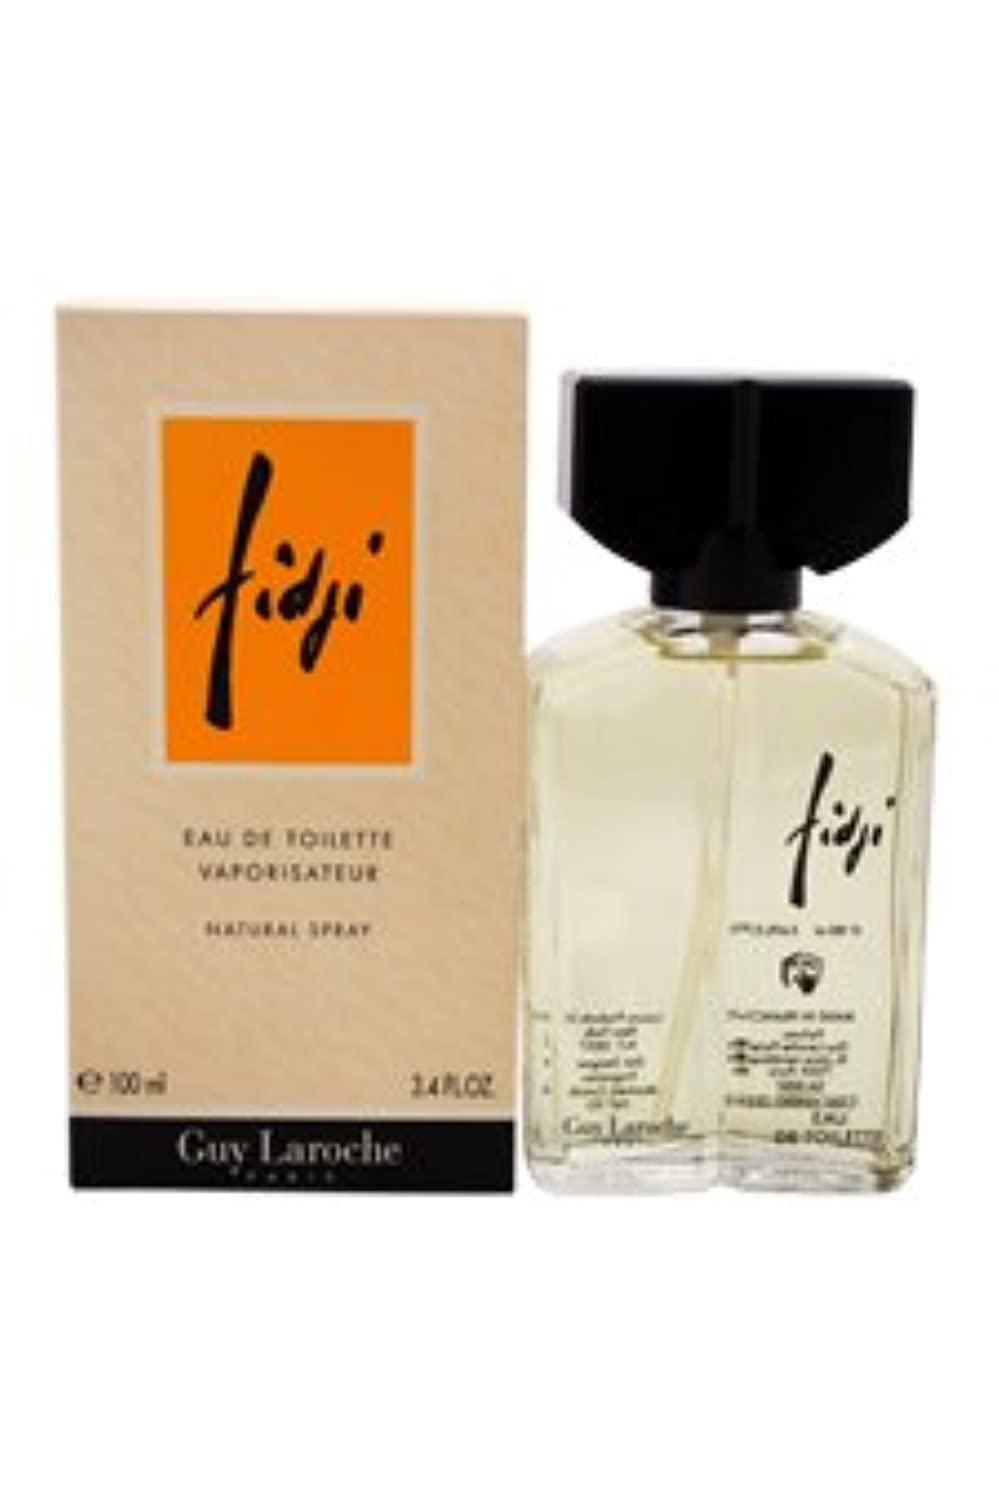 Guy Laroche Fidji 100ml/3.4oz Eau de Toilette Spray Perfume Fragrance for Women